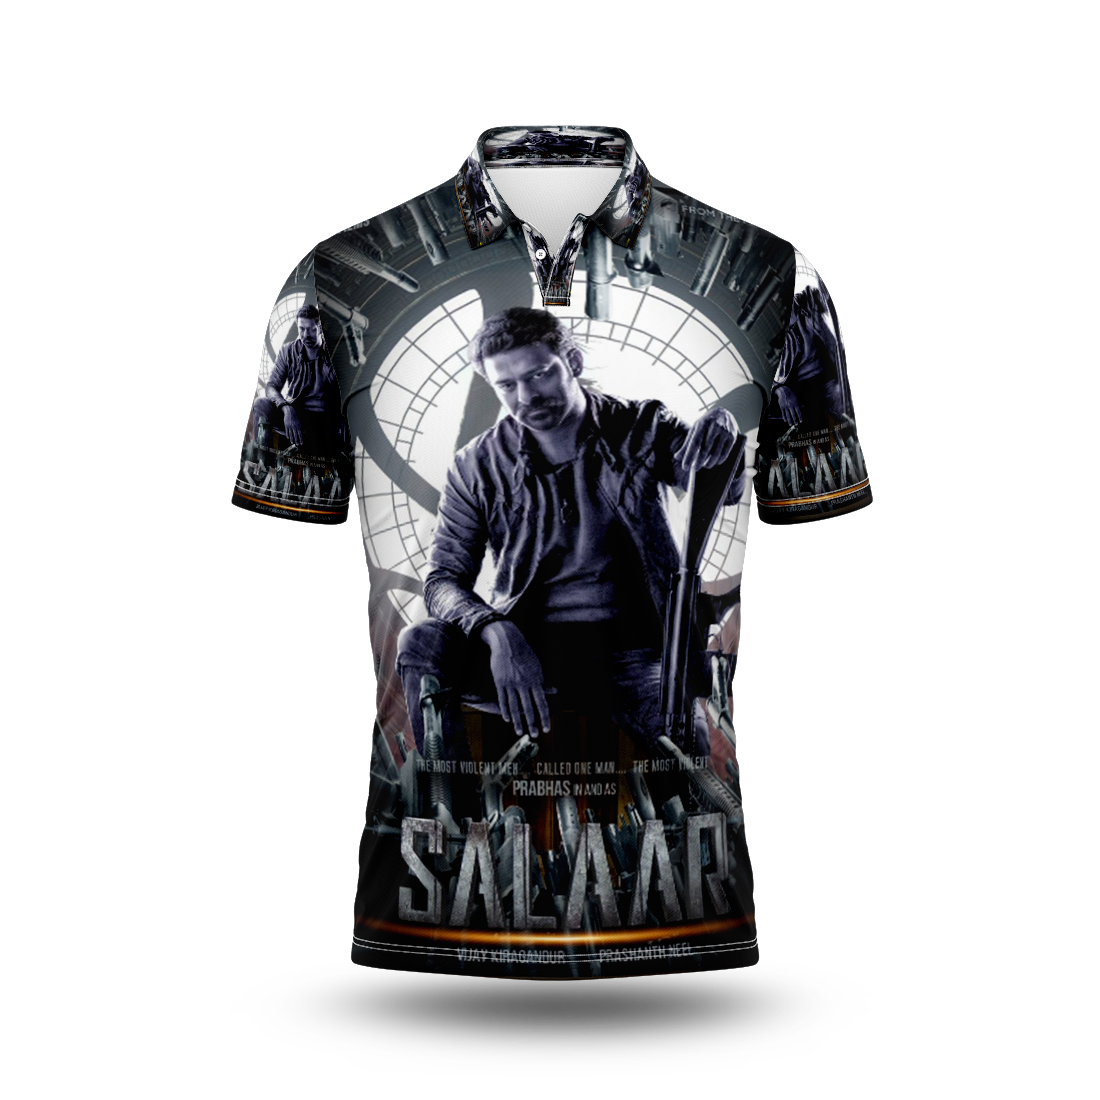 Salaar Movie Printed T-Shirt. Prabas.